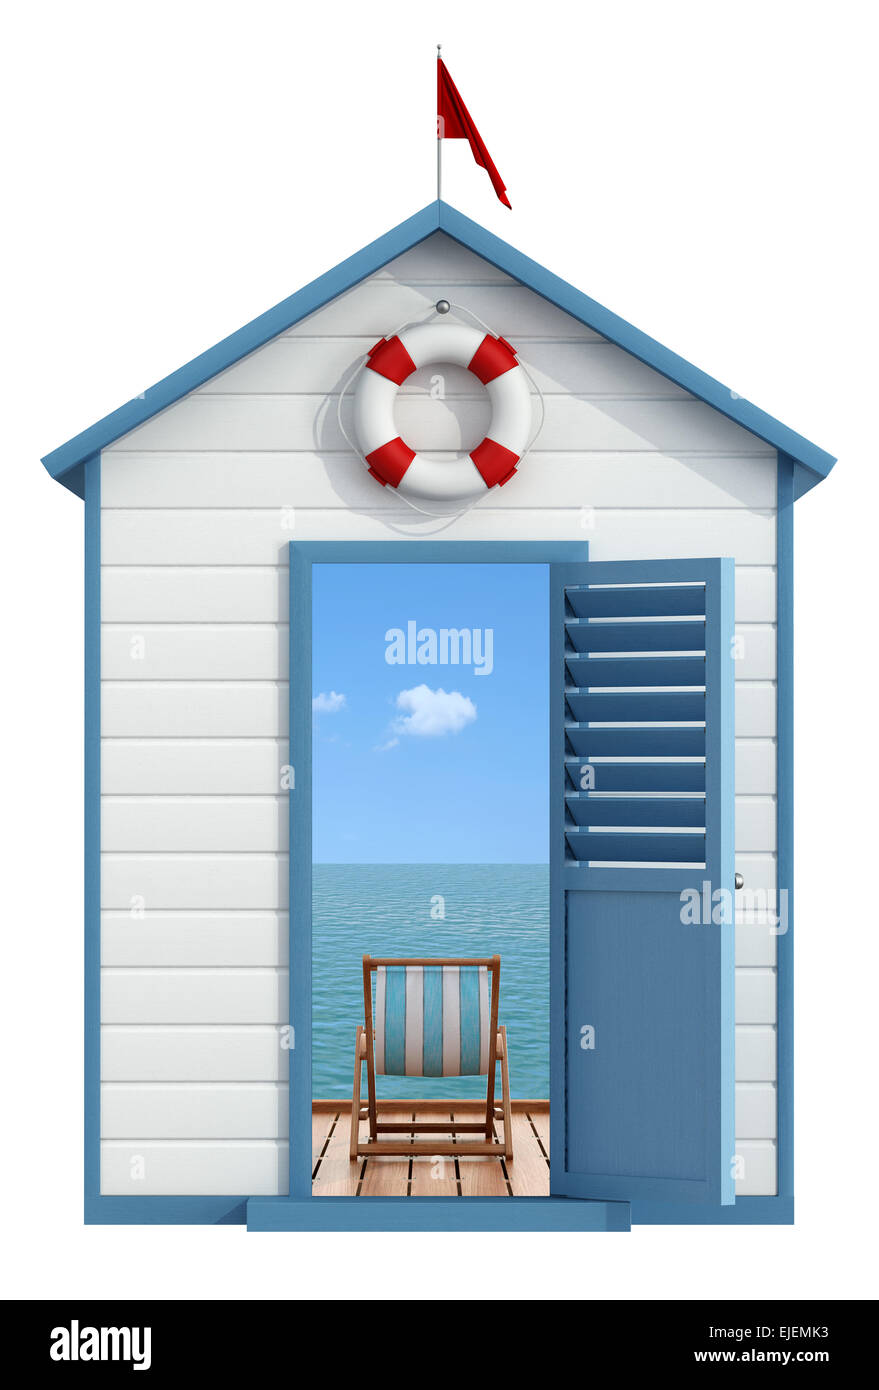 Strandkabine mit offener Tür, innen ein Pier am Meer mit Liegestuhl - 3D Rendering Stockfoto